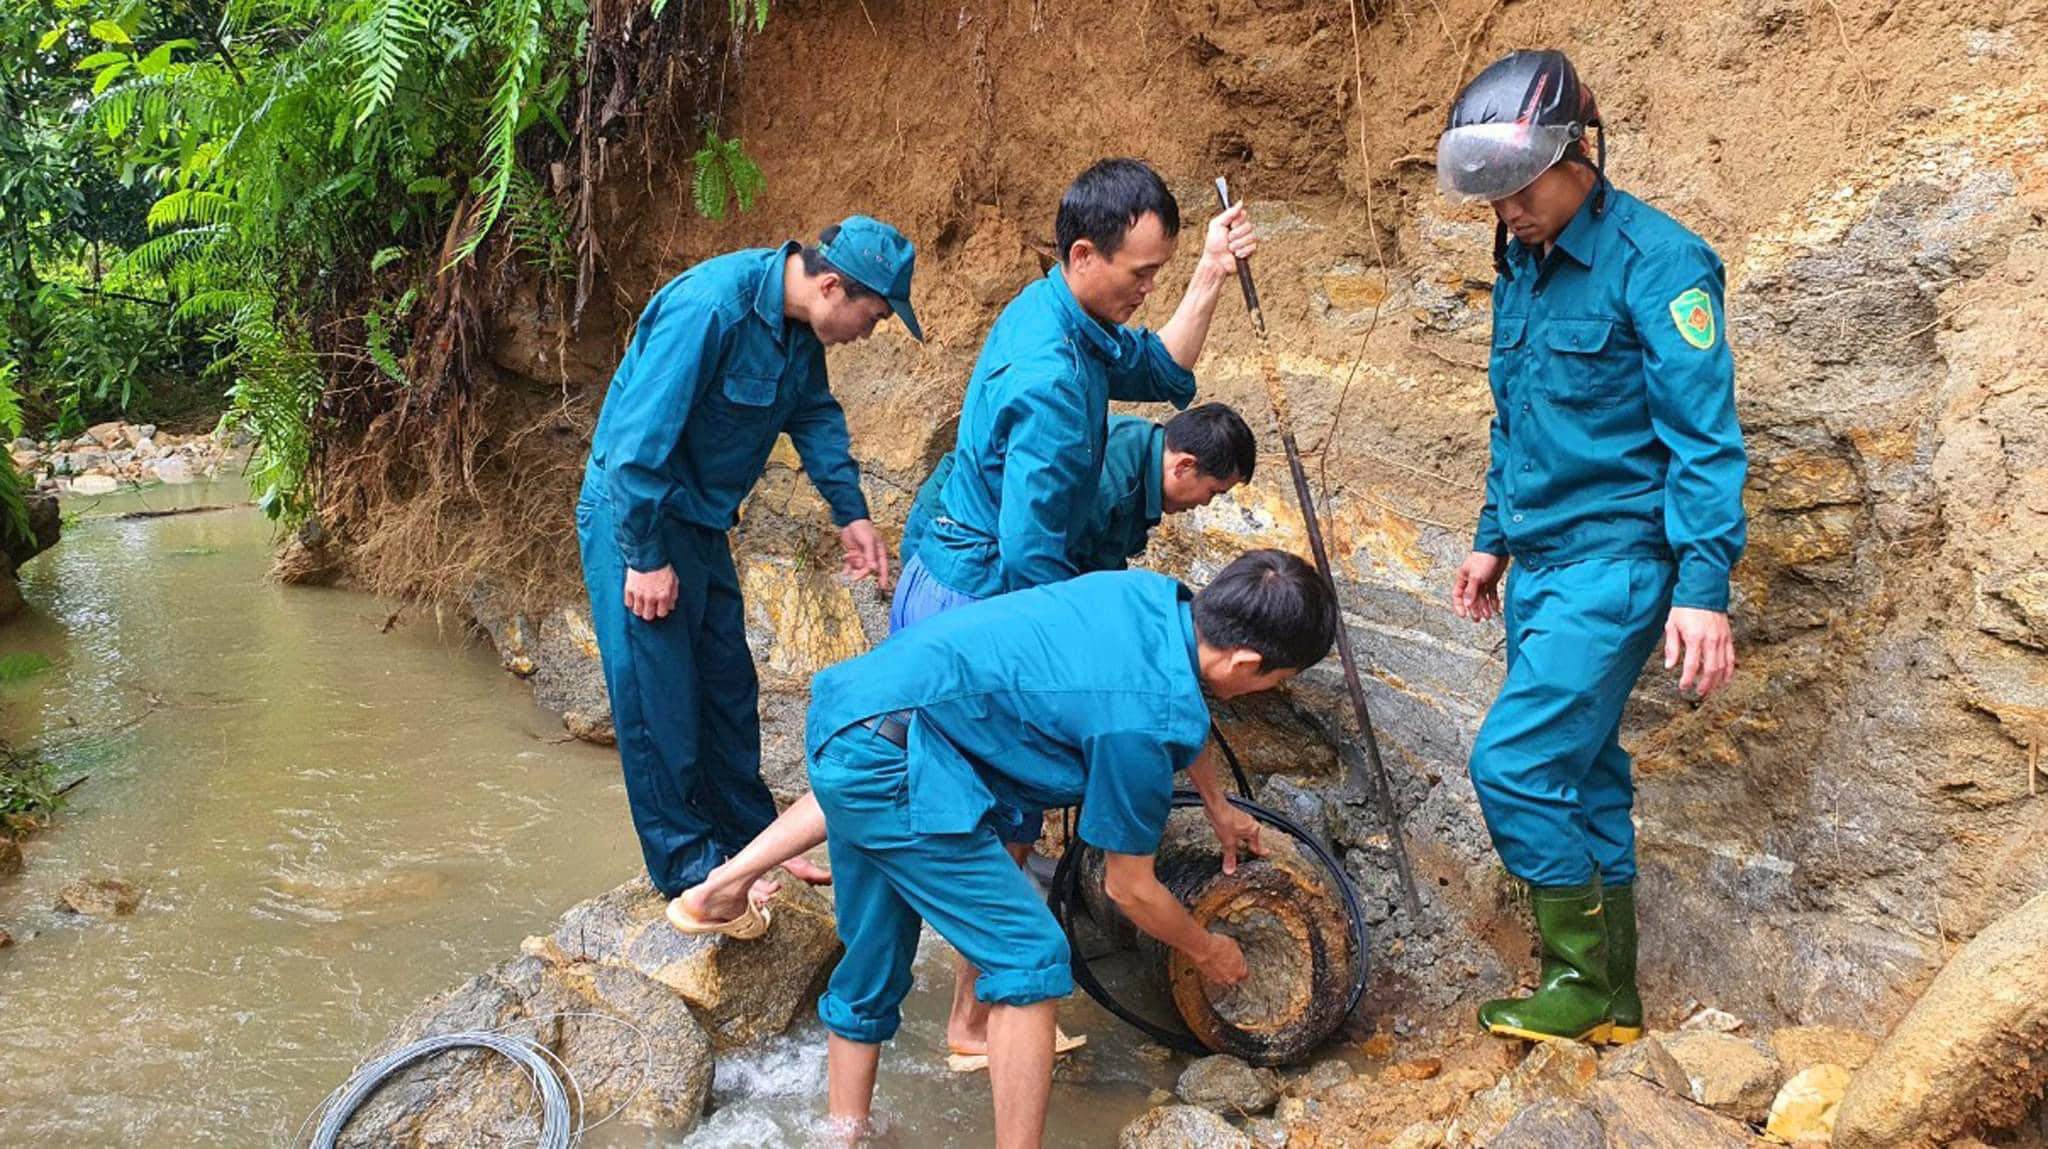 Quả bom được phát hiện tại khe nước ở bản Mường Him, xã Tiền Phong (huyện Quế Phong, Nghệ An). Ảnh: Quân sự tỉnh Nghệ An.